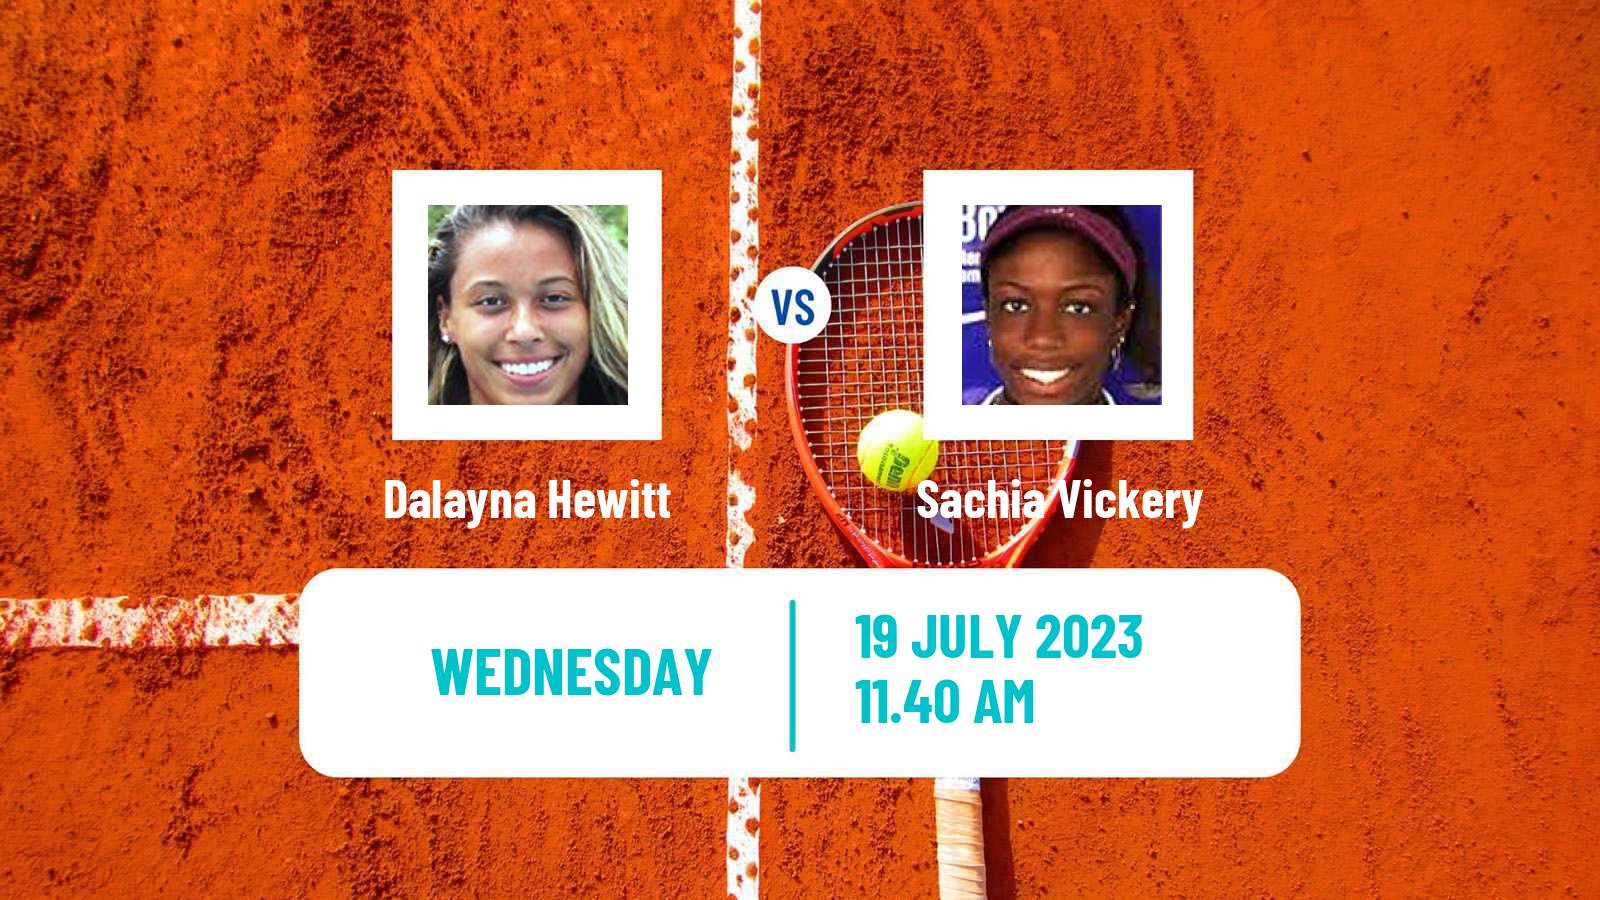 Tennis ITF W60 Evansville In Women Dalayna Hewitt - Sachia Vickery